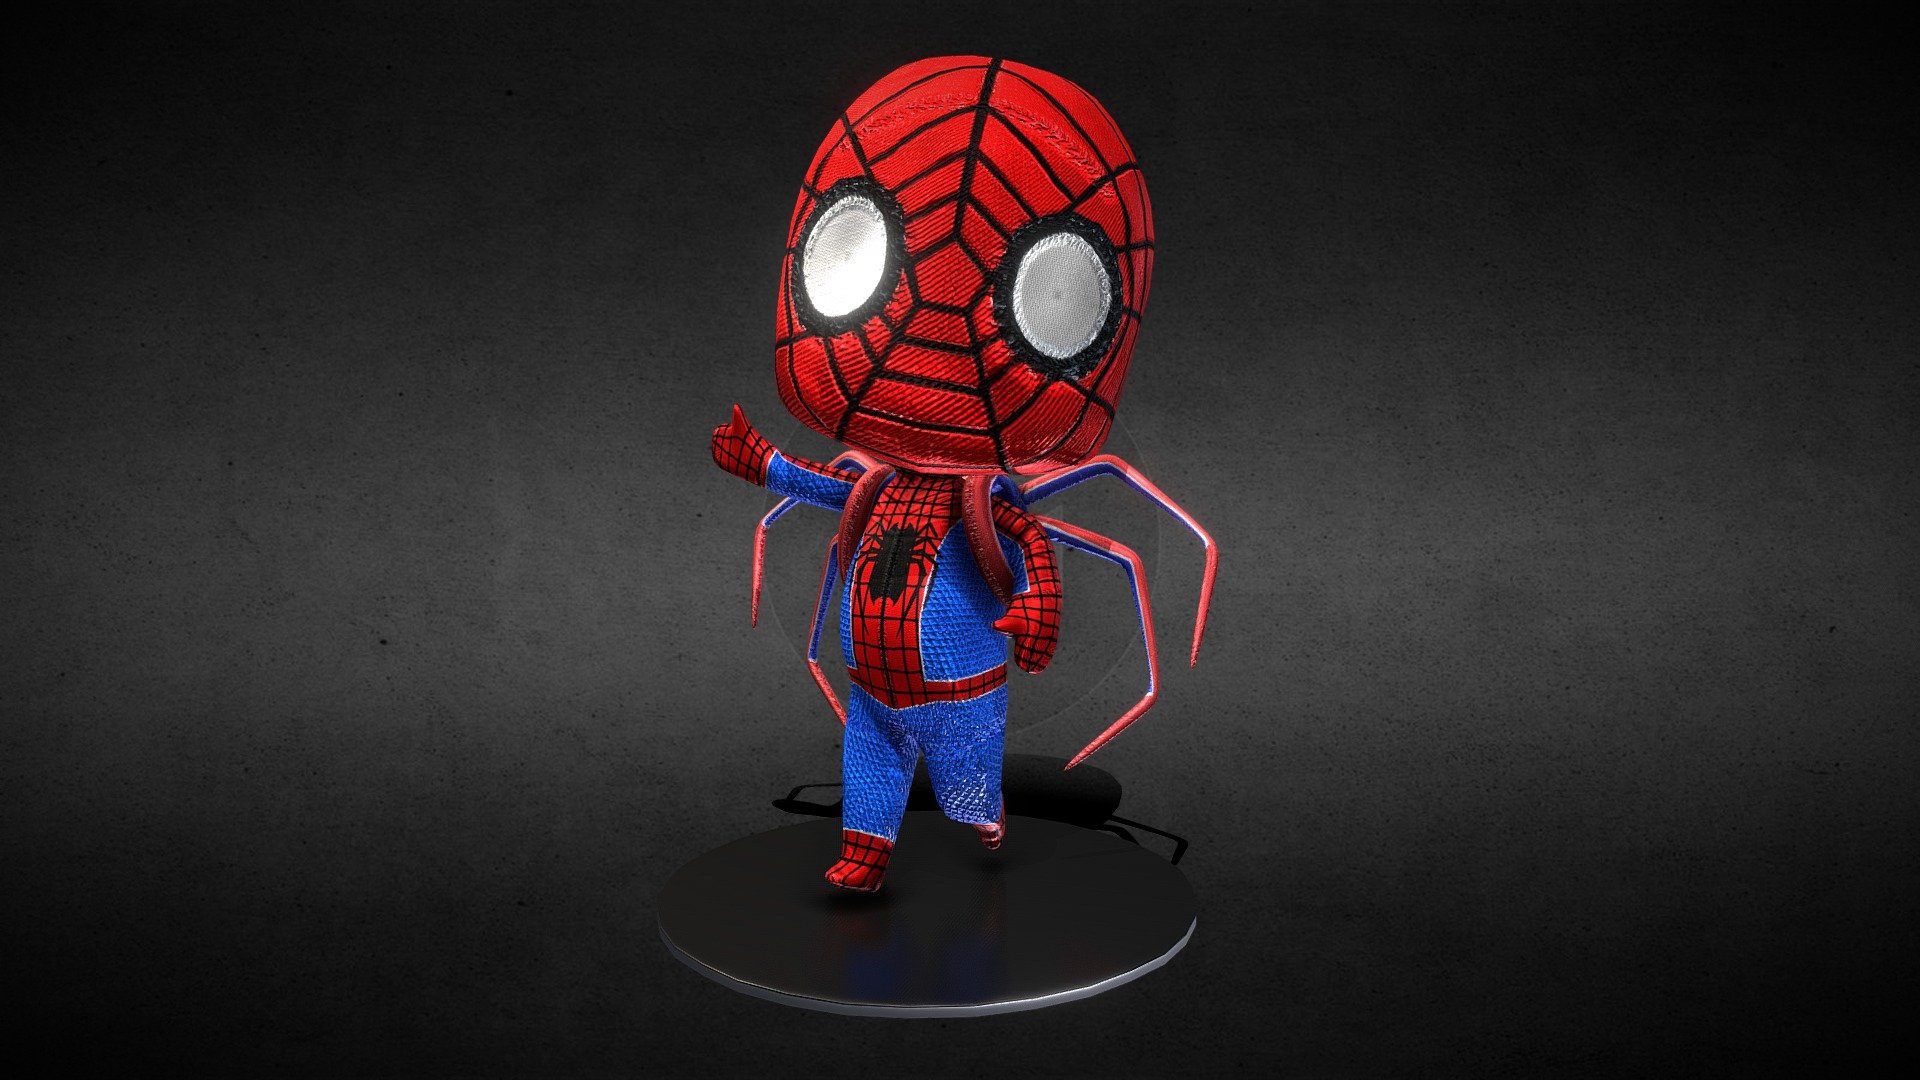 Khám phá gian hàng mô hình Spider Man chibi độc đáo và đầy sáng tạo. Sản phẩm được chế tác tỉ mỉ và được thiết kế theo phong cách Chibi sẽ tạo nên một điểm nhấn độc đáo cho bộ sưu tập của bạn. Bạn sẽ không thể chối từ khả năng để sở hữu một chiếc mô hình Spider Man chibi thú vị.